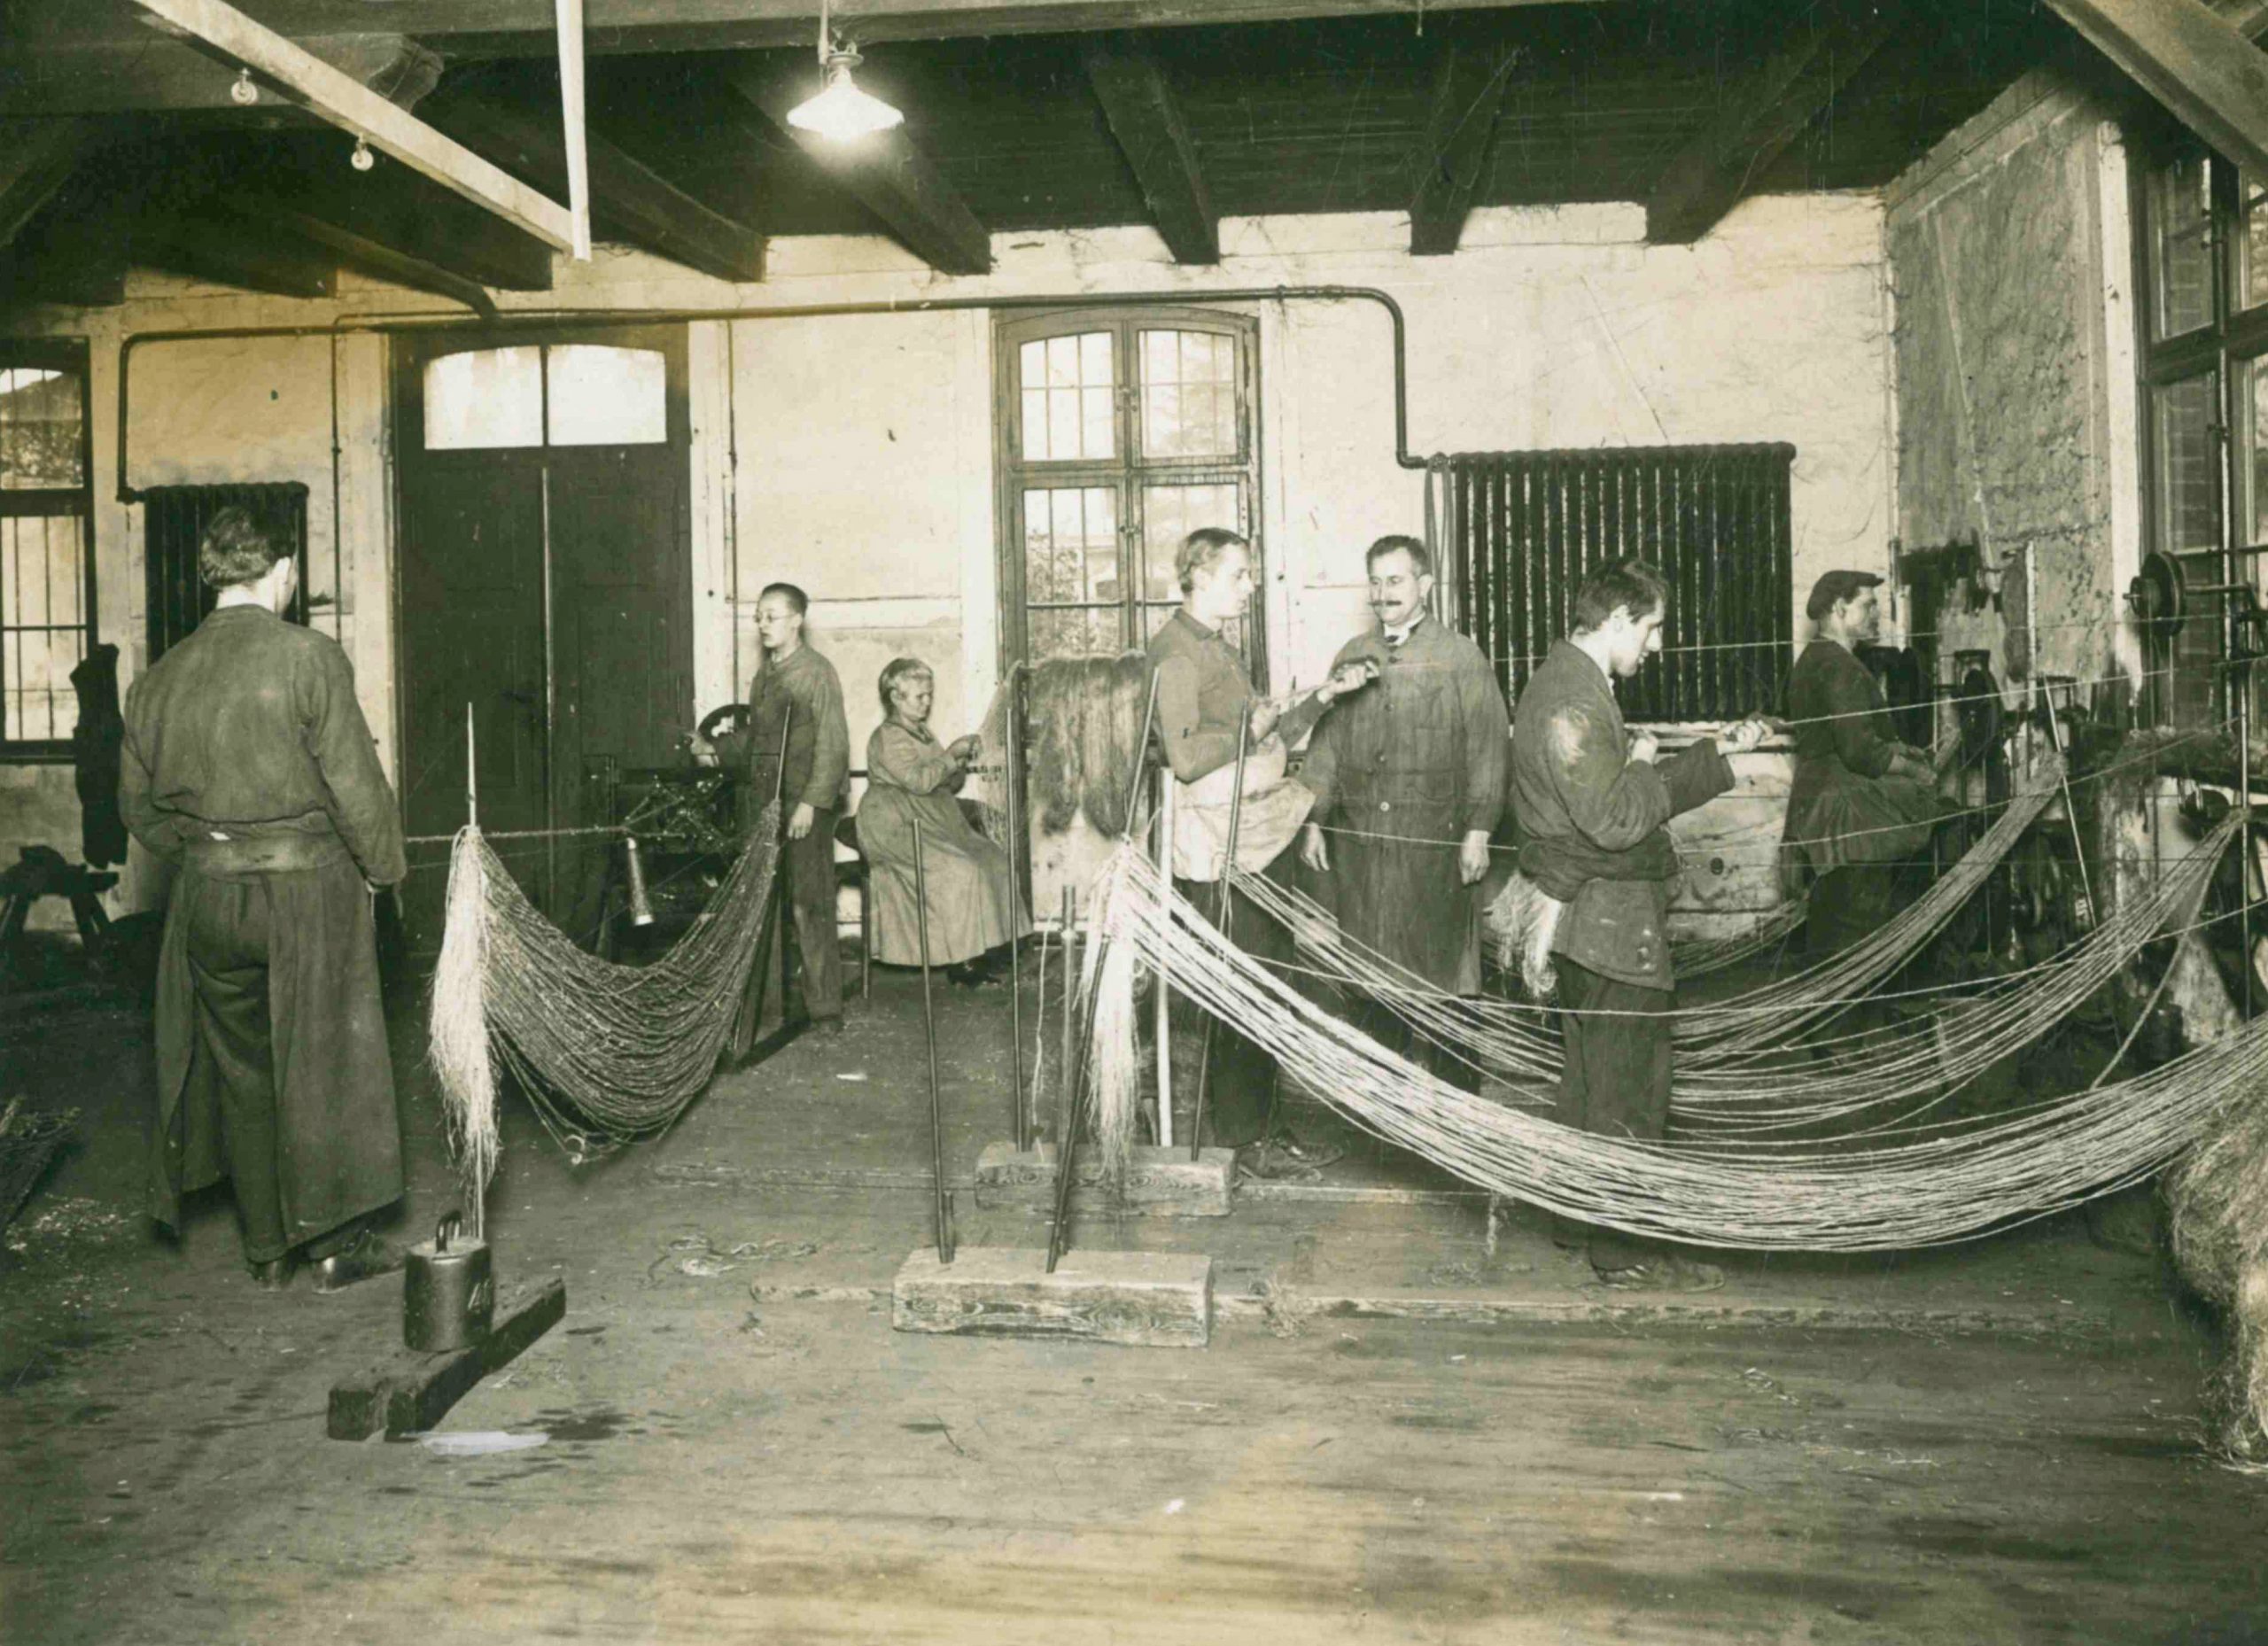 Sechs Männer und eine Frau befinden sich in einer Seilerei. Sie arbeiten. Das Bild stammt aus dem Jahr 1926.